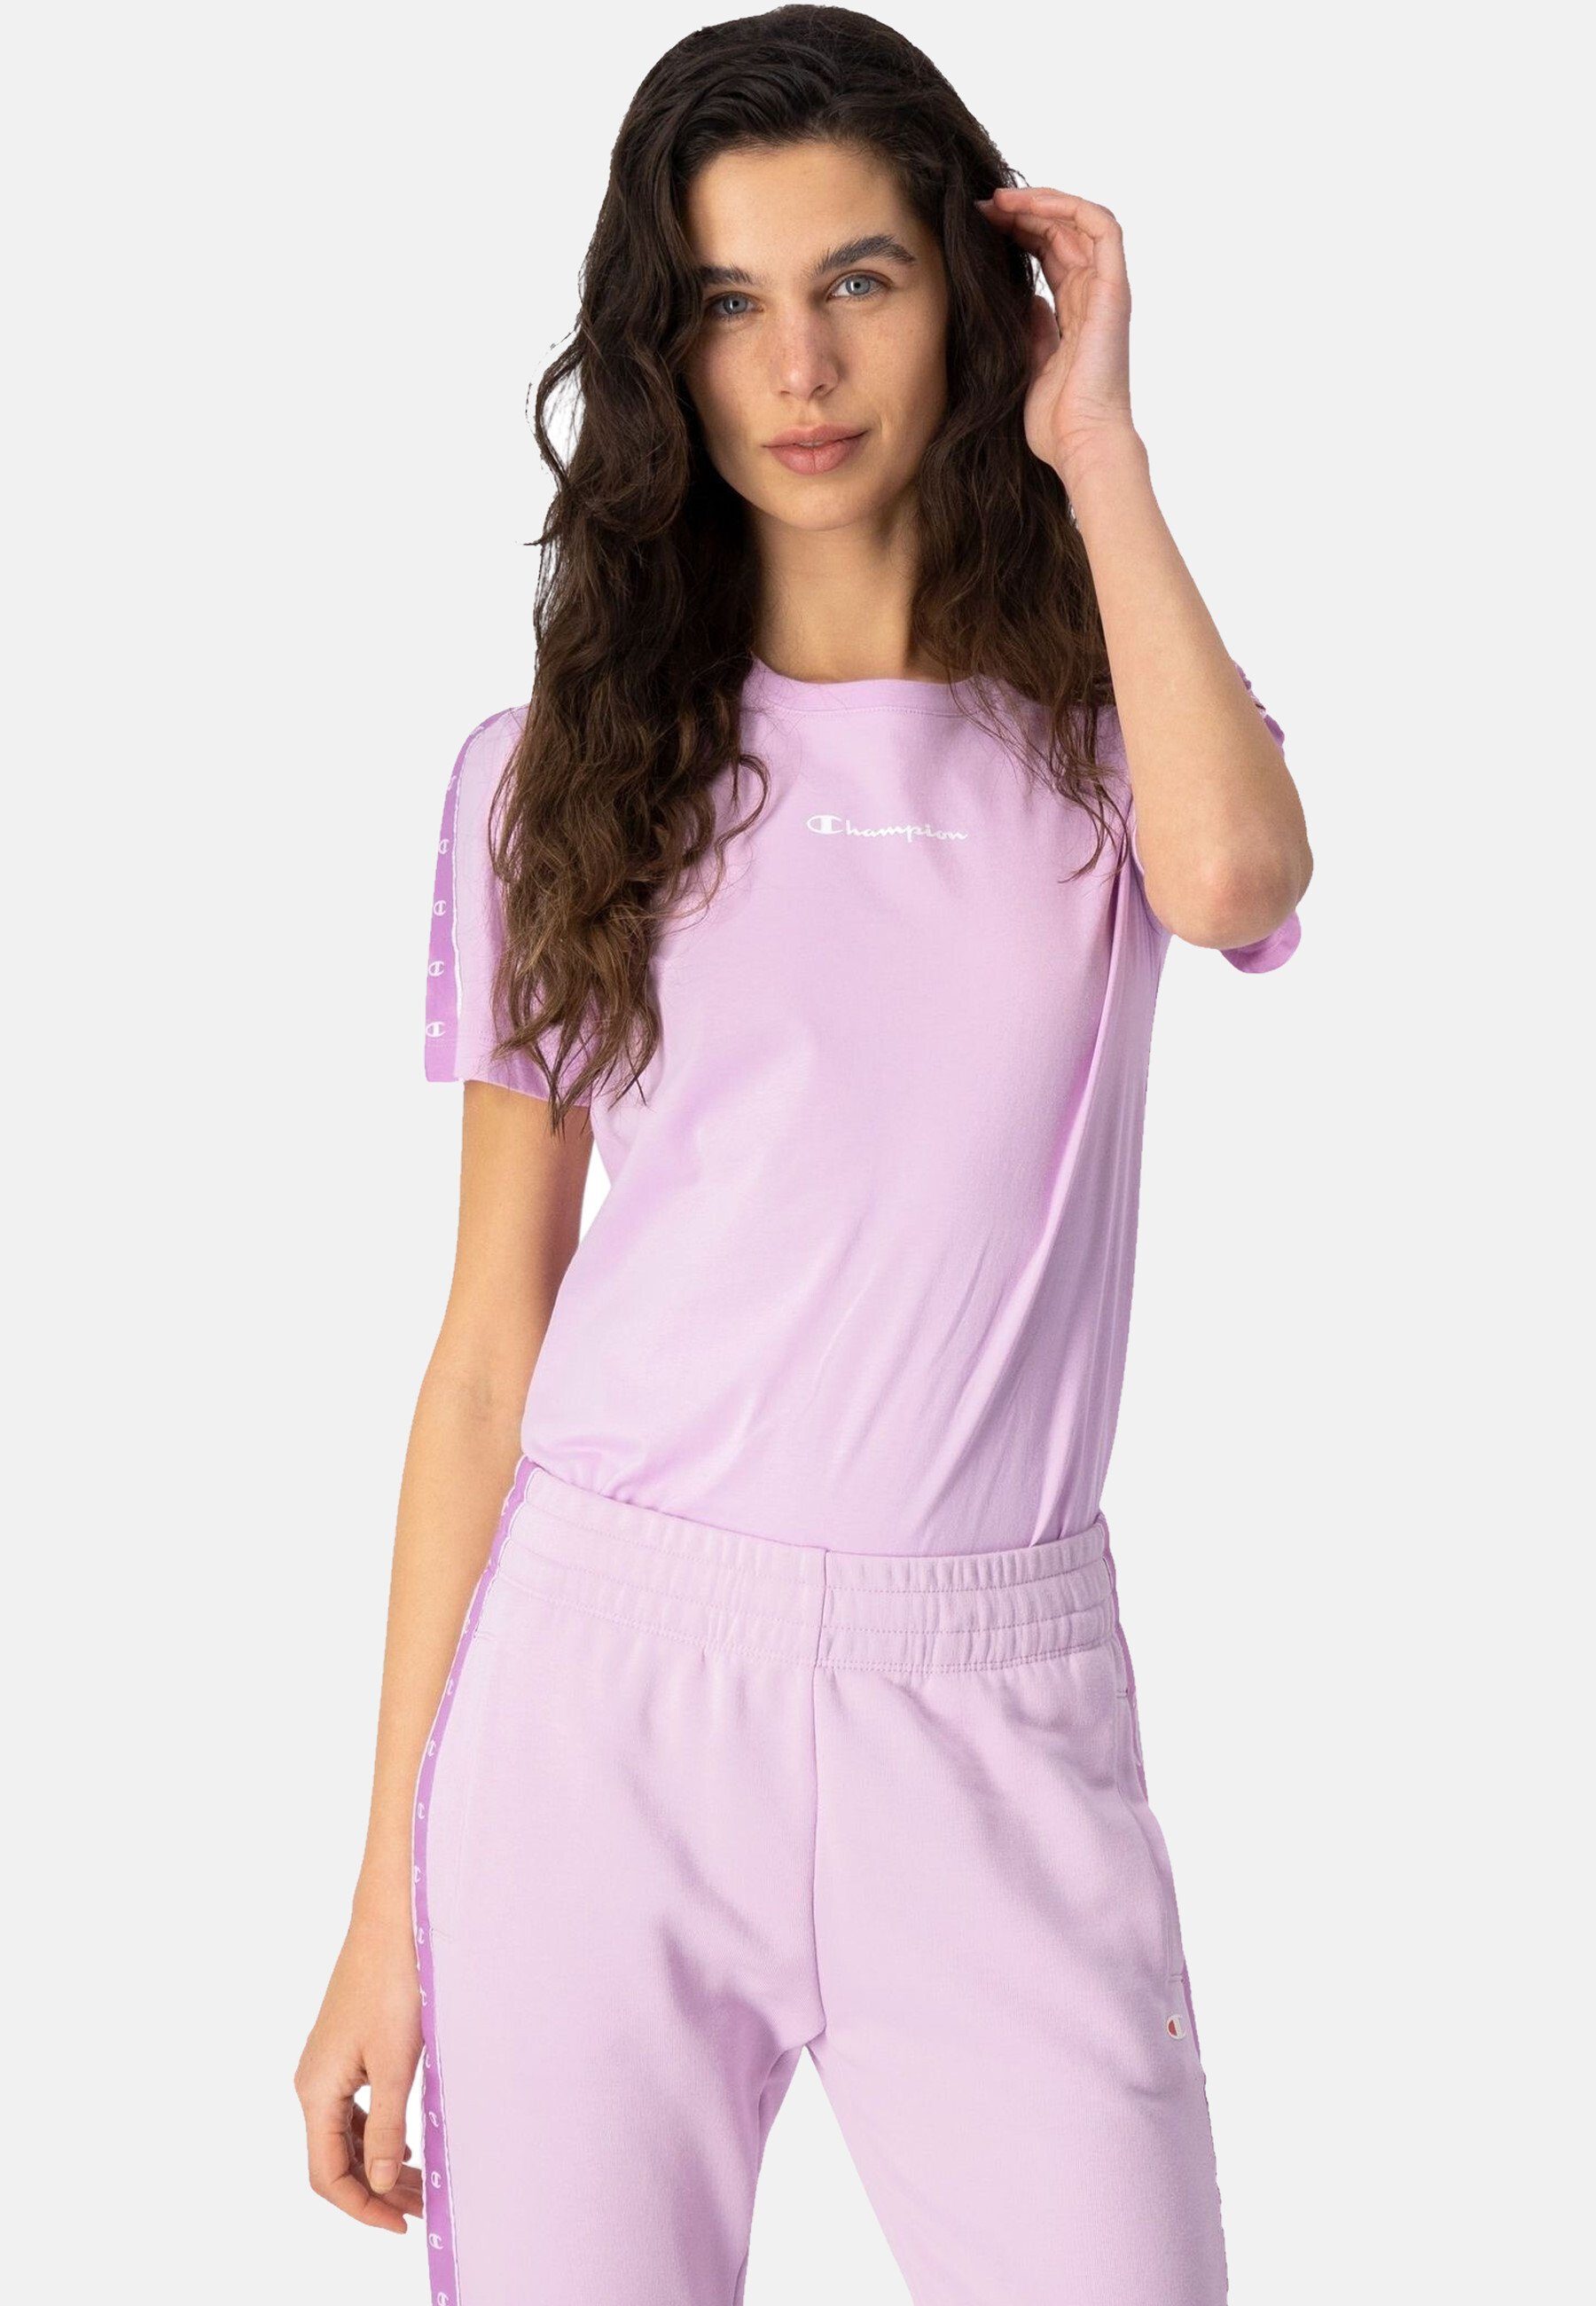 Shirt pink mit Champion T-Shirt Rundhals-T-Shirt Baumwolle aus